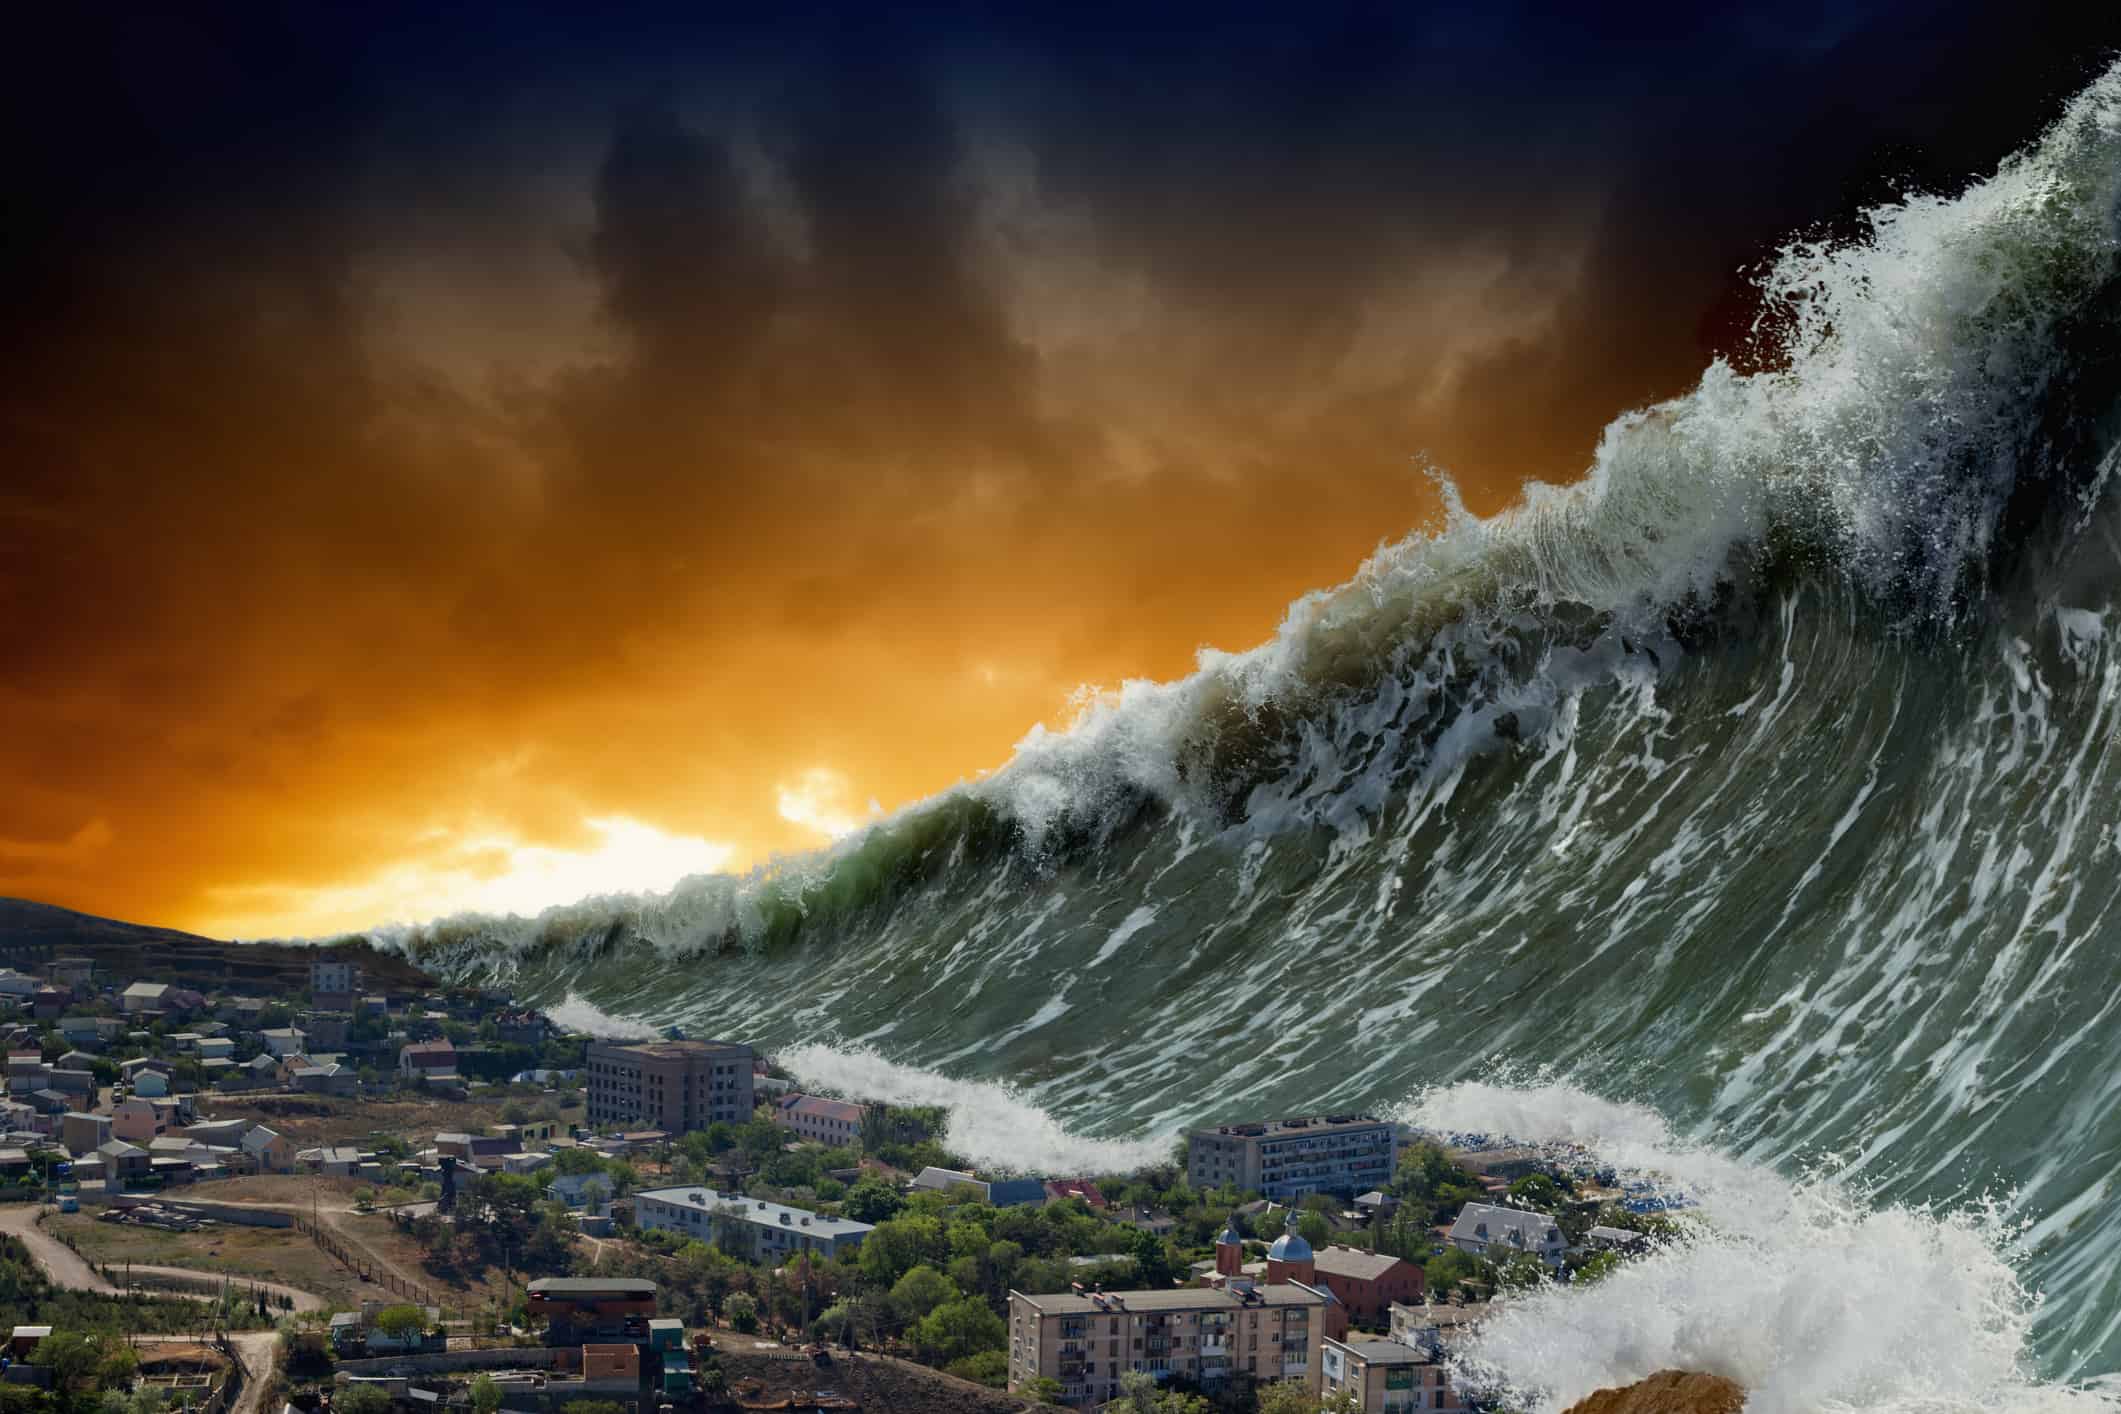 COVID-19: A Tsunami Is Building